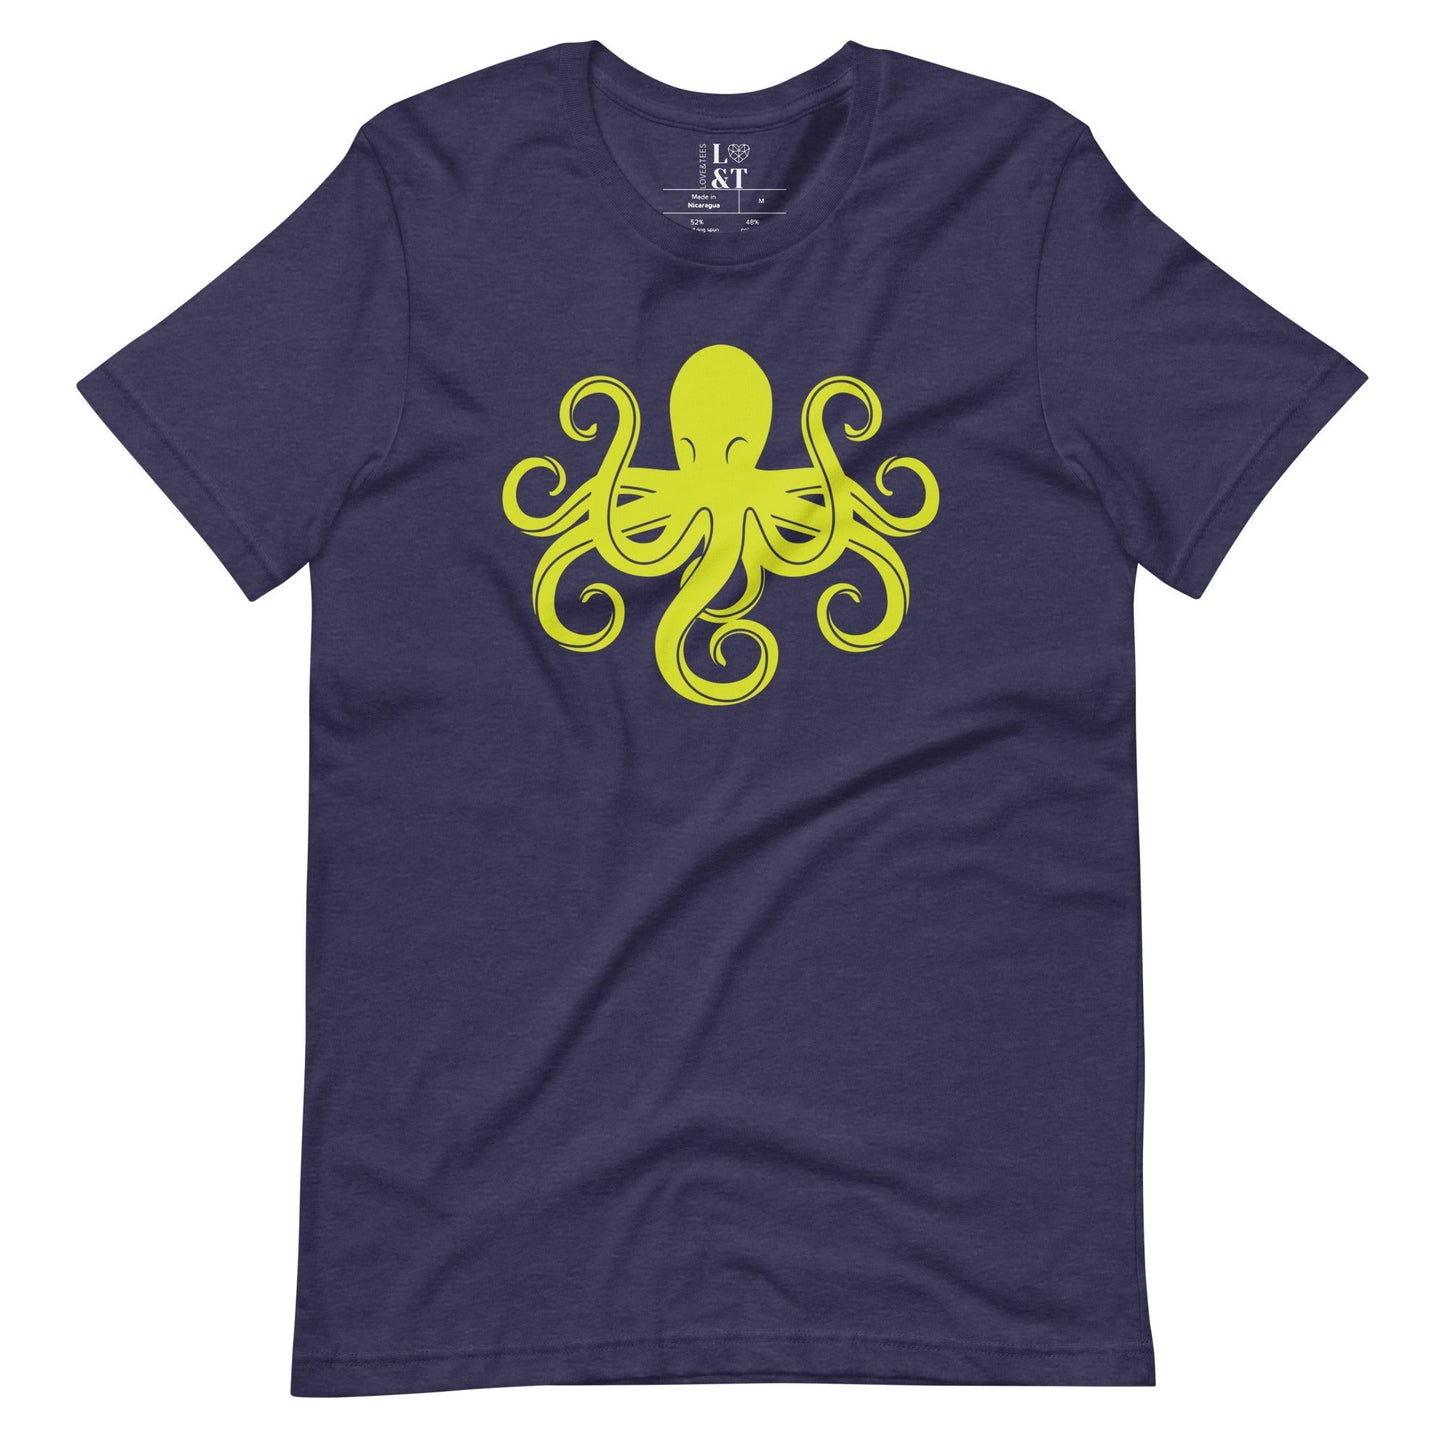 Octopus Unisex T-Shirt